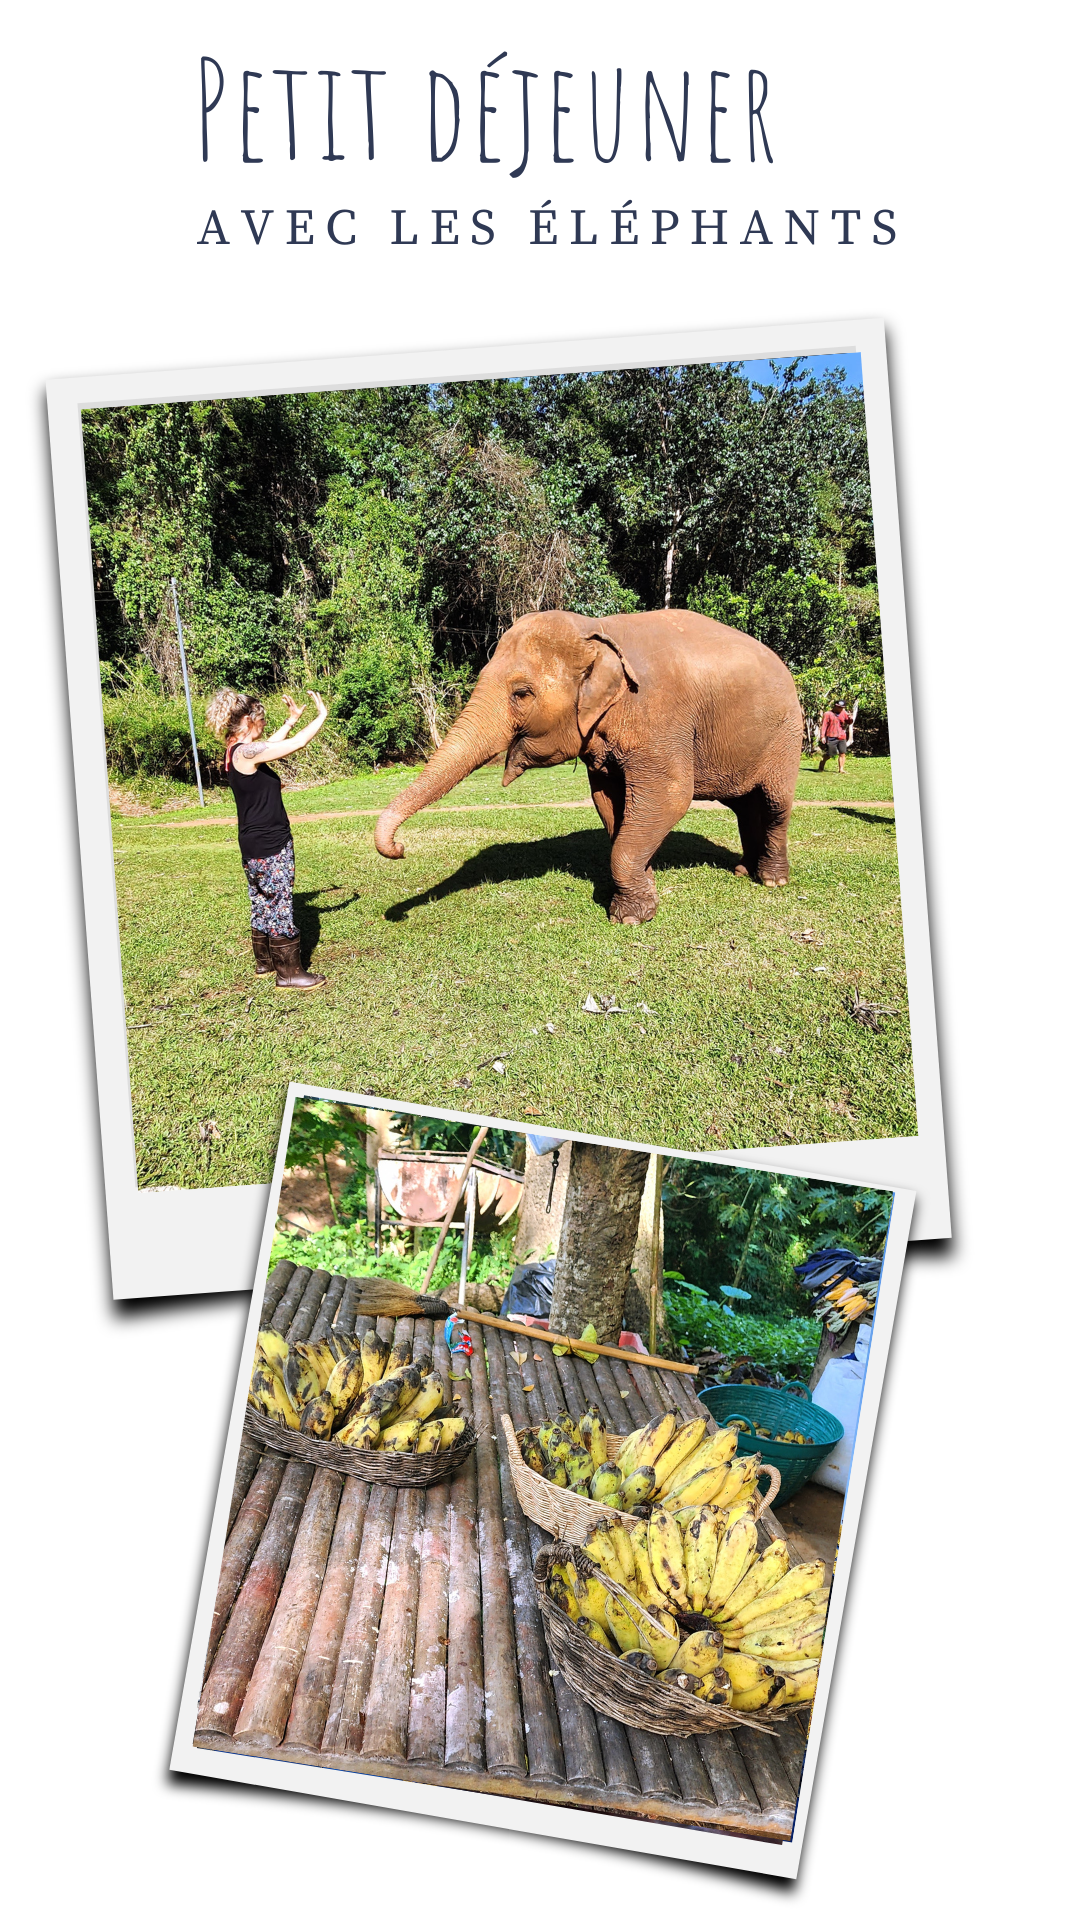 excurssion-elephant-friends-chiang-mai-repas-de-bananes